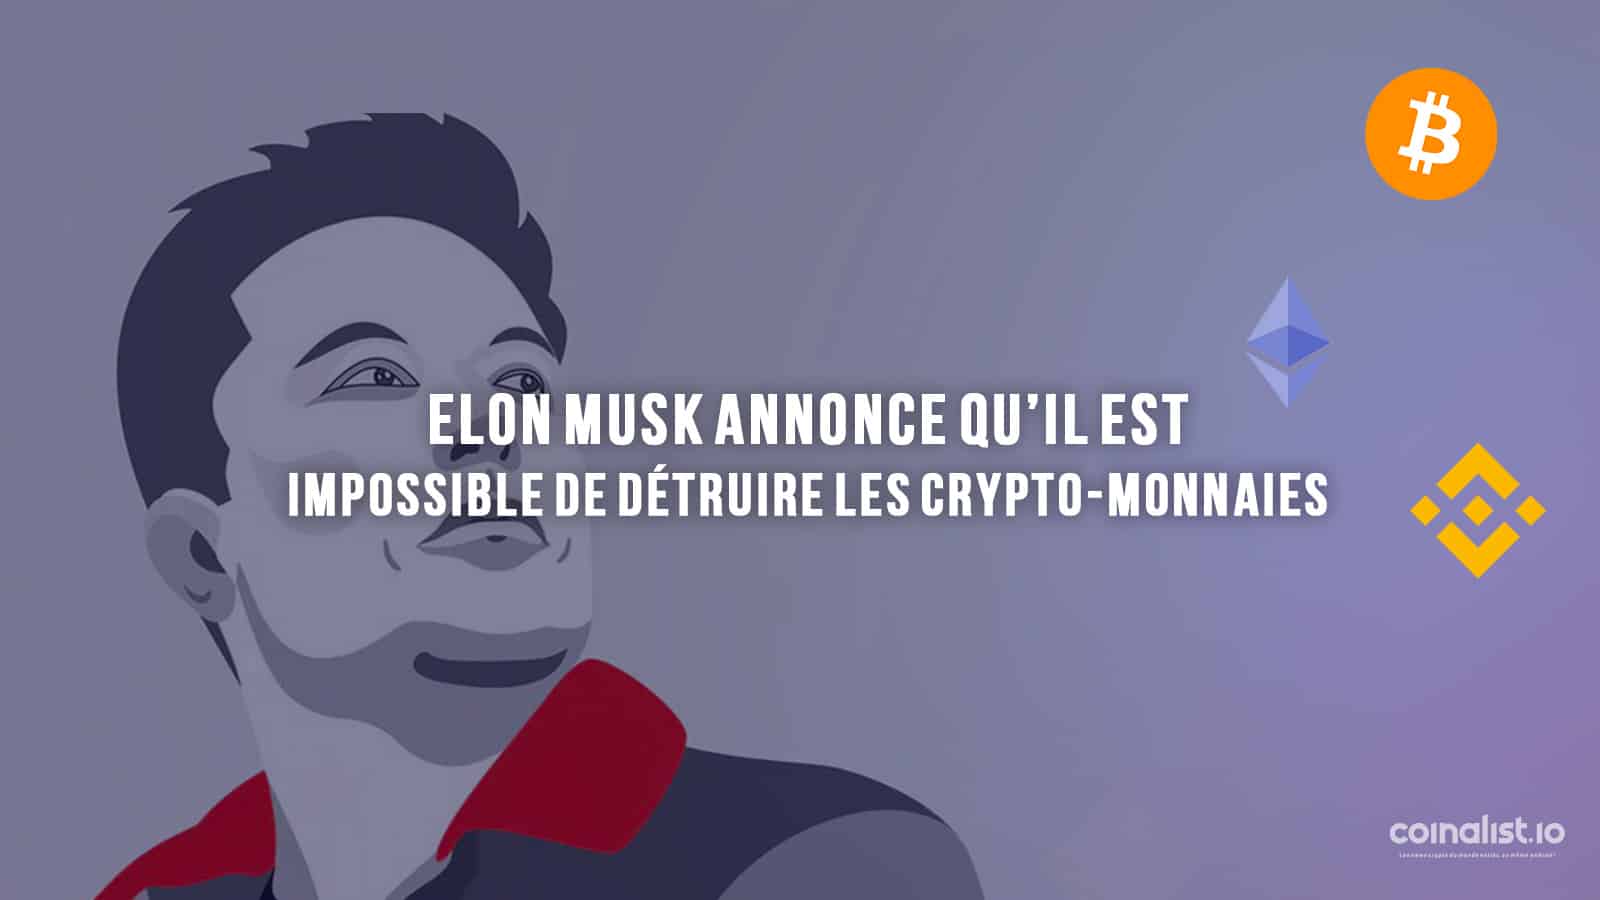 Elon Musk : Impossible De Détruire Les Crypto-Monnaies - Logo